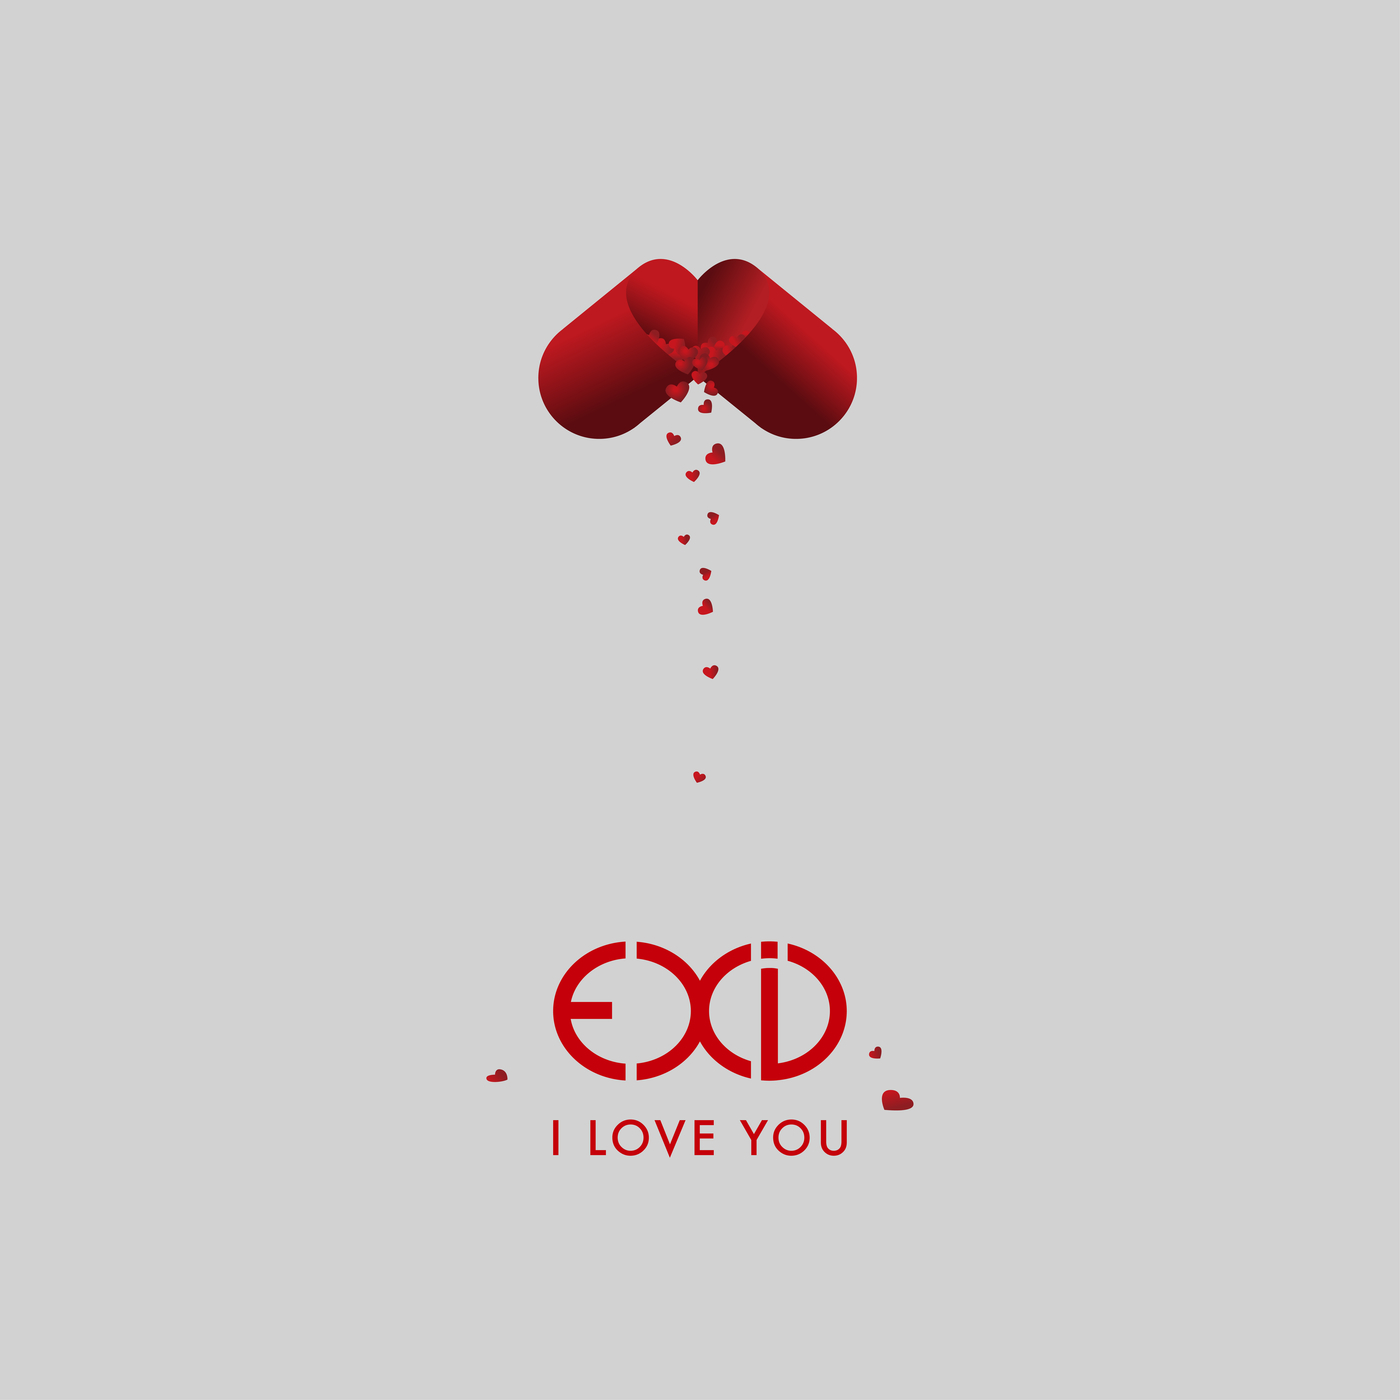 I Love You (EXID)